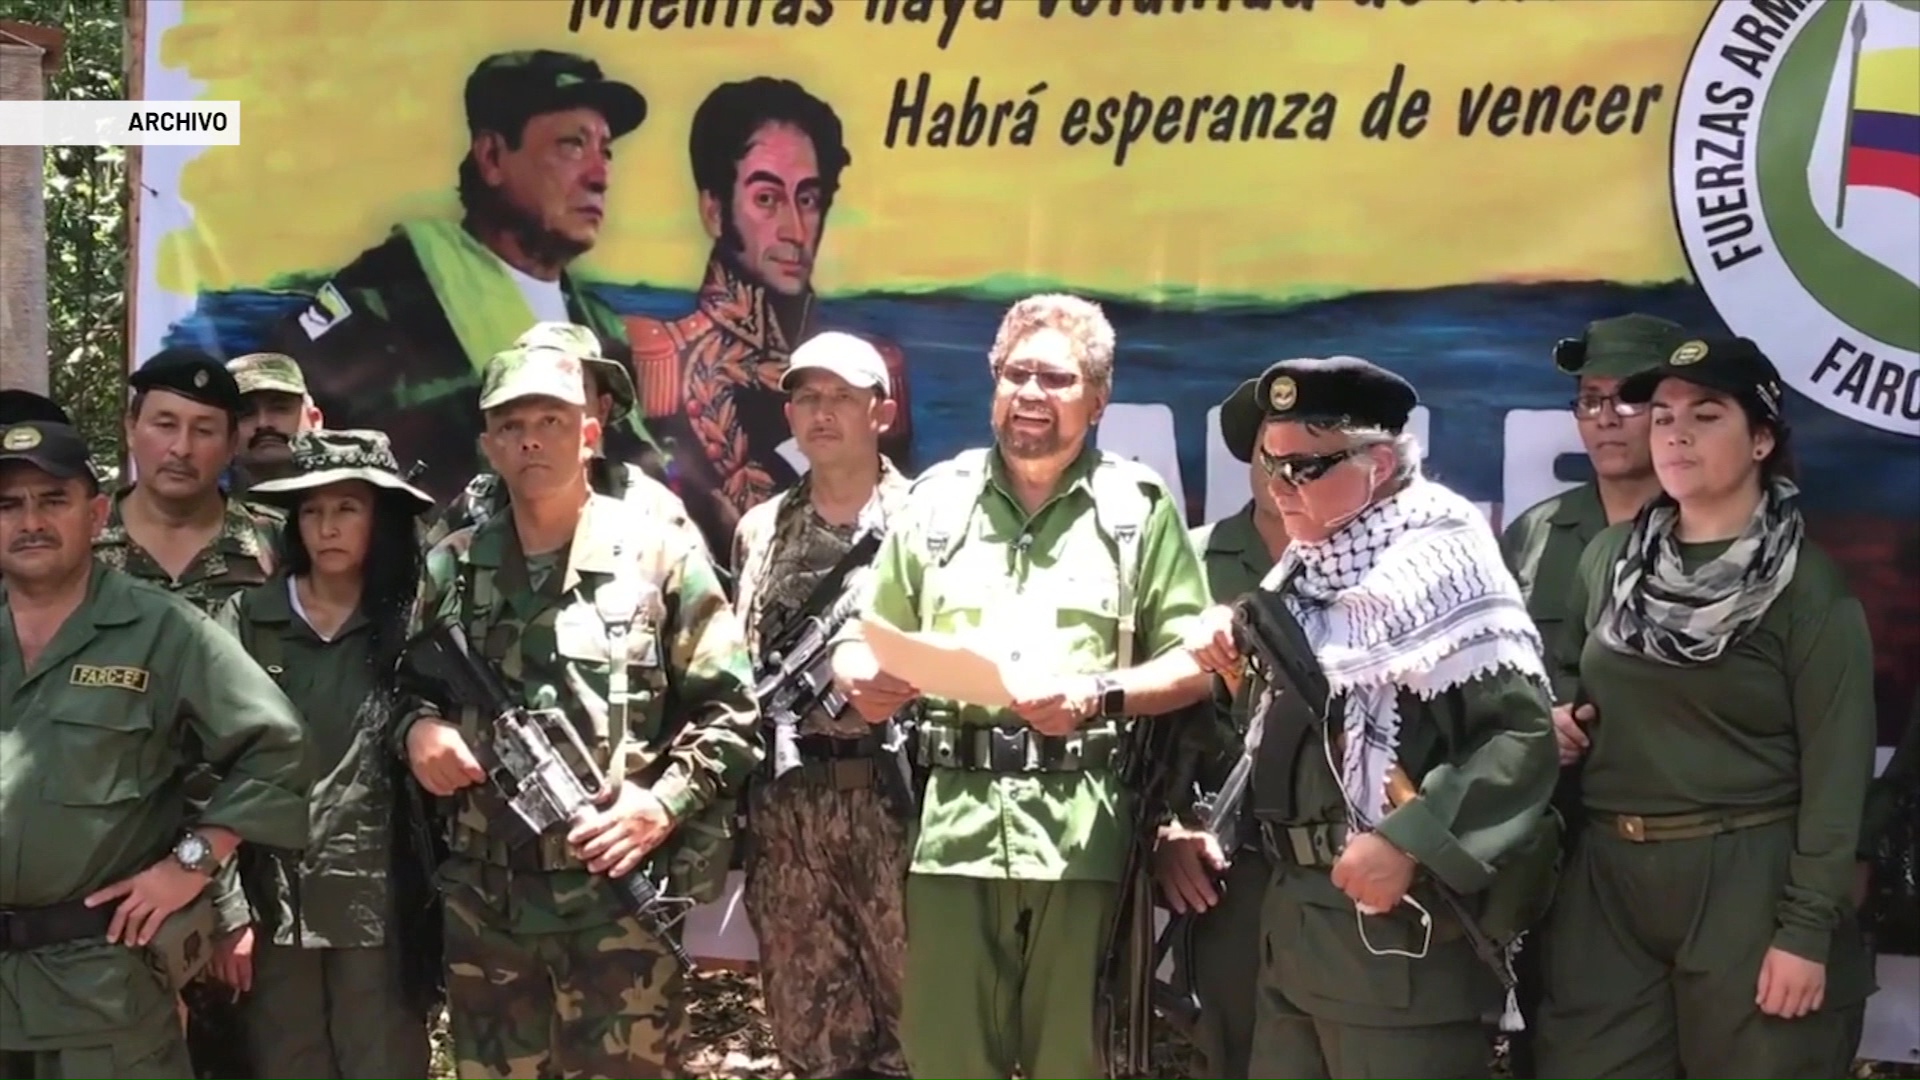 Investigan si Iván Márquez fue dado de baja en Venezuela